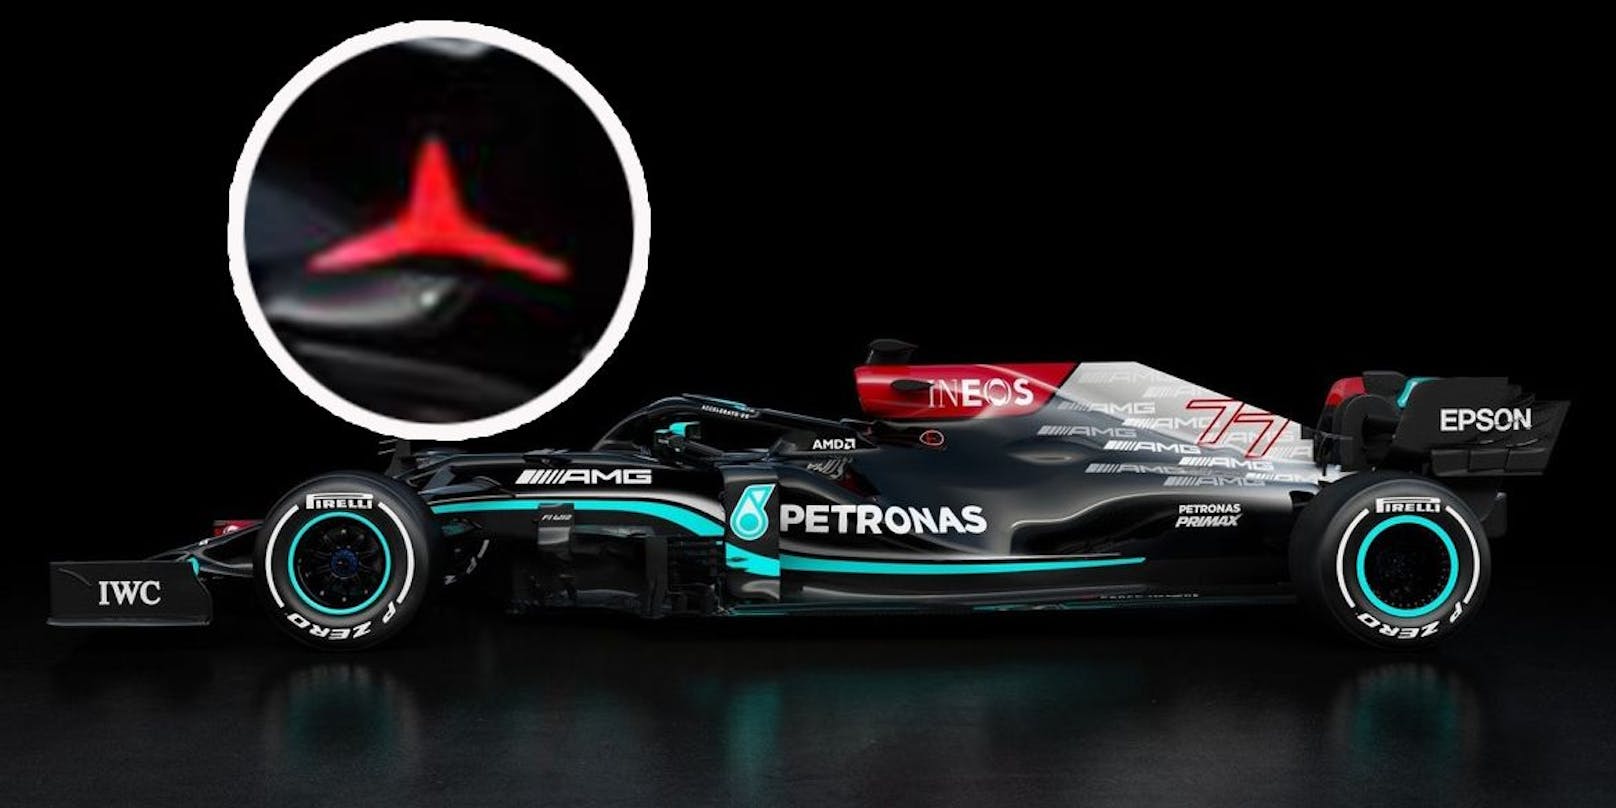 Der neue Mercedes-Bolide. Der rote Stern repräsentiert Niki Lauda.